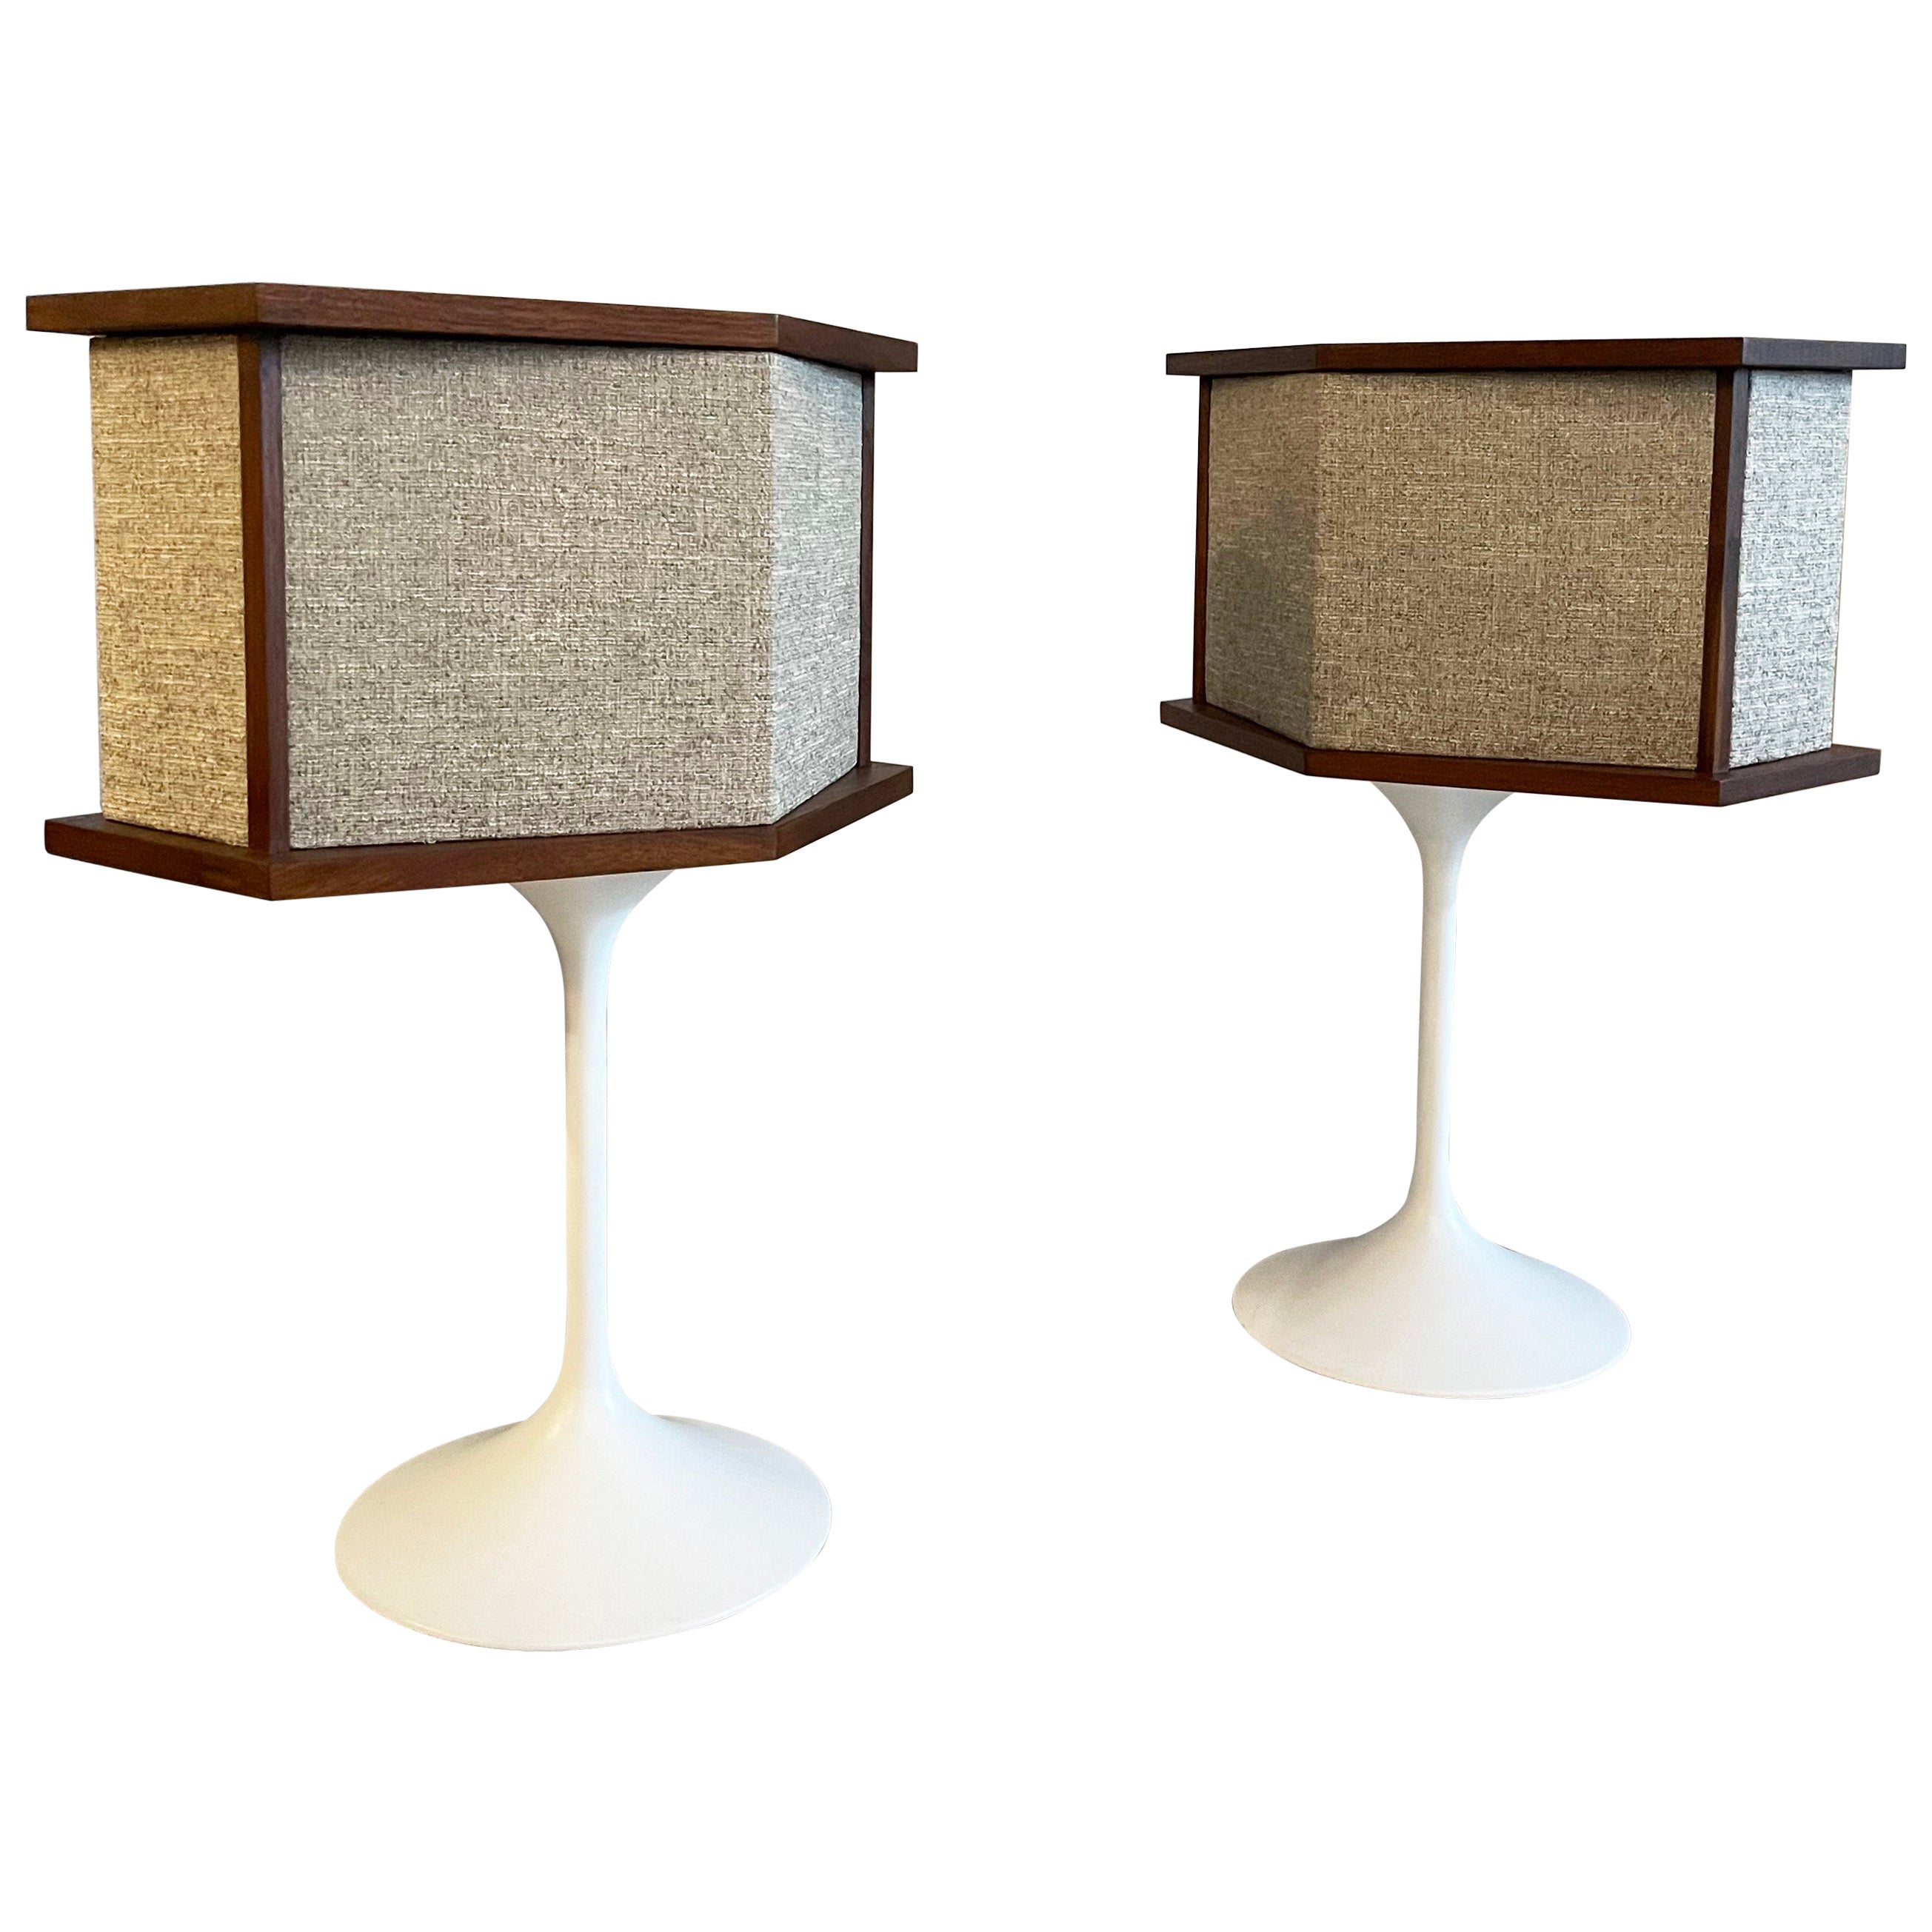 Speakers de la série Bose 901 sur socles Tulip d'Eero Saarinen